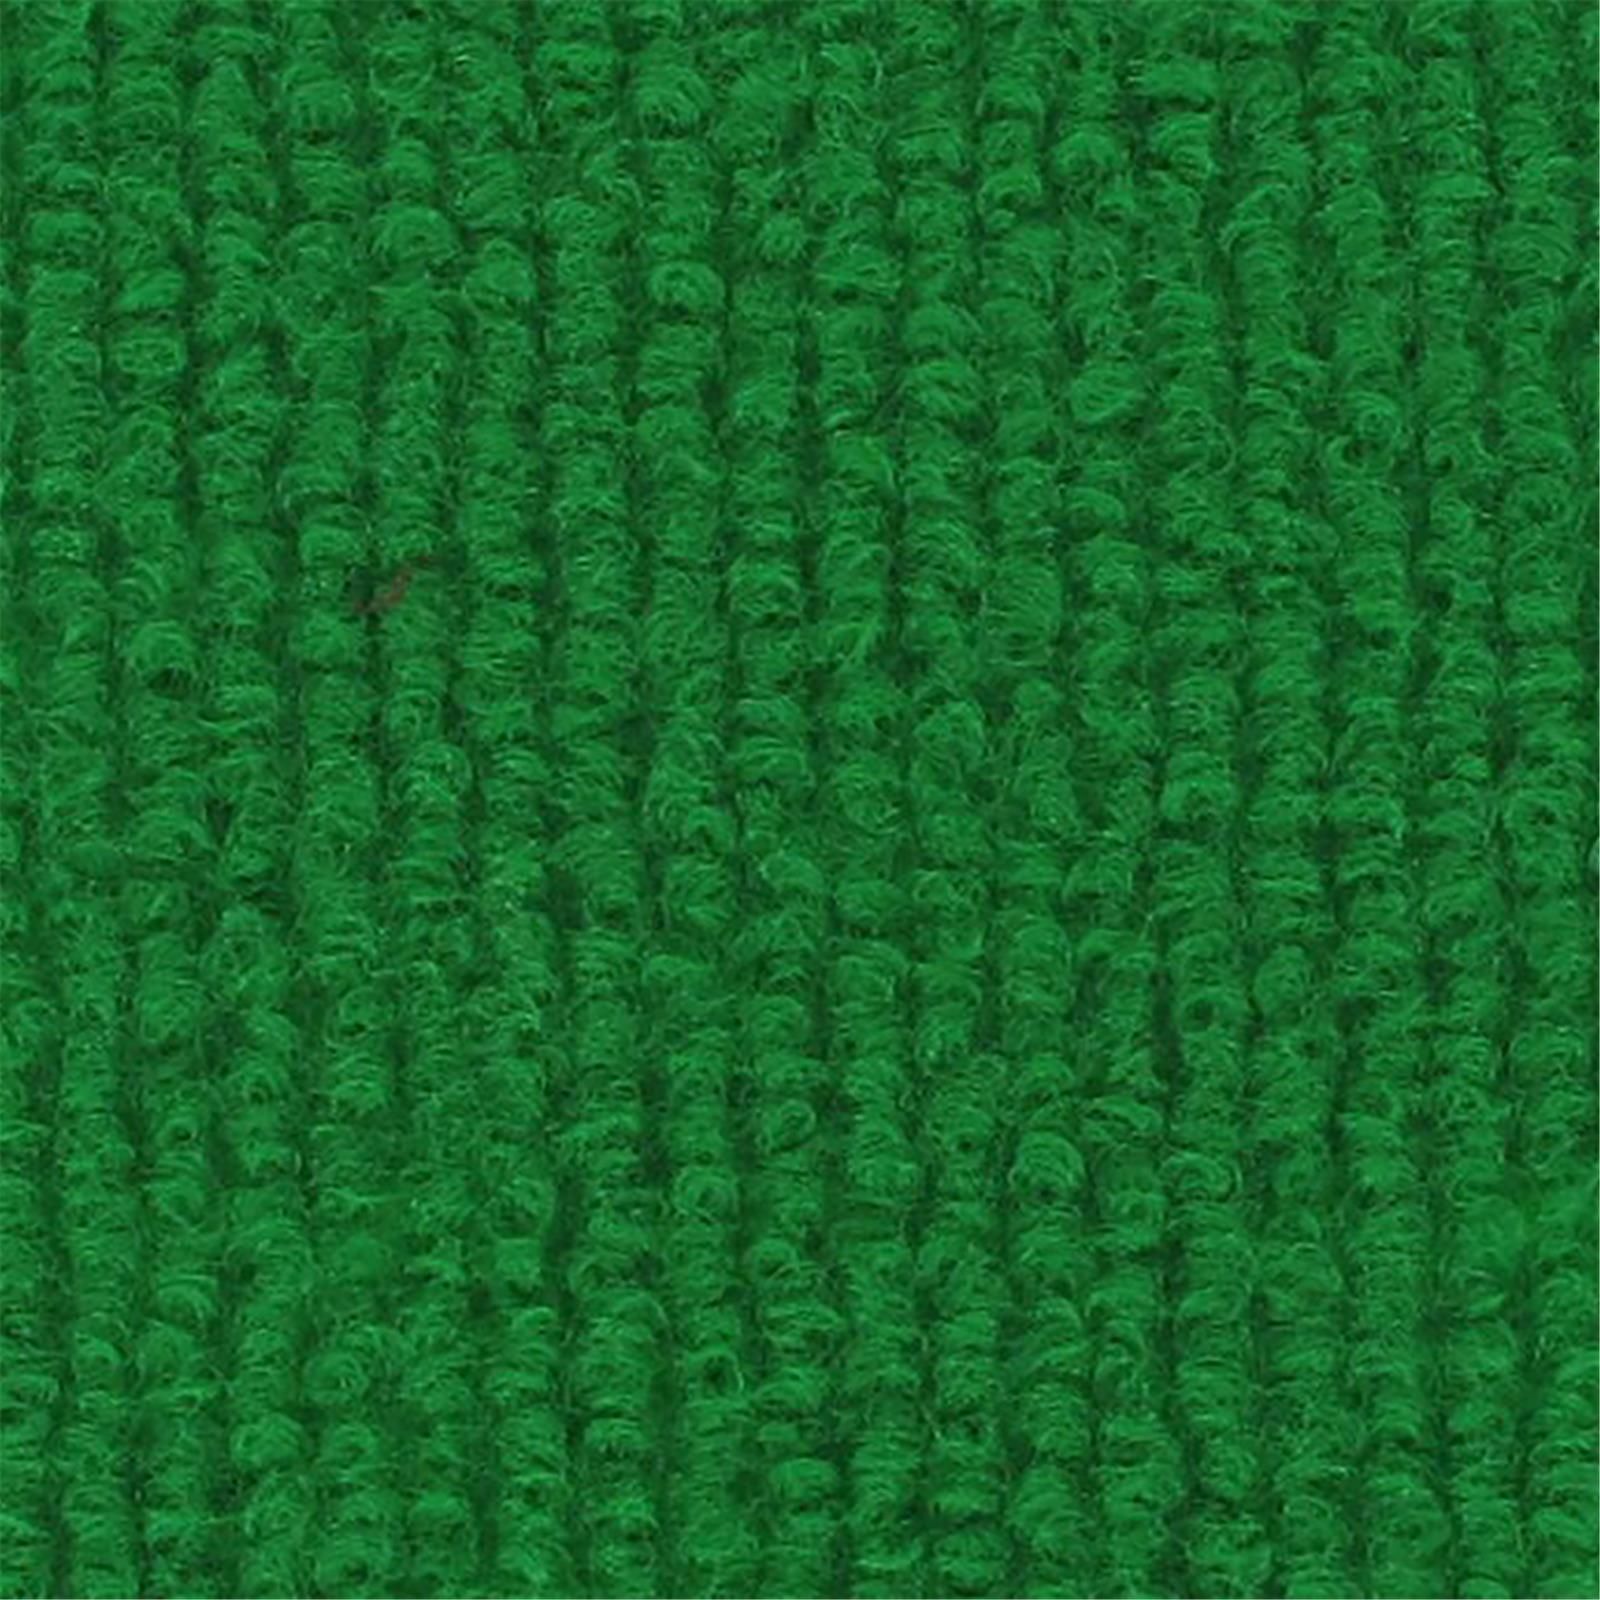 Messeboden Rips-Nadelvlies EXPOLINE Grass Green 0041 100qm ohne Schutzfolie - Rollenbreite 200 cm